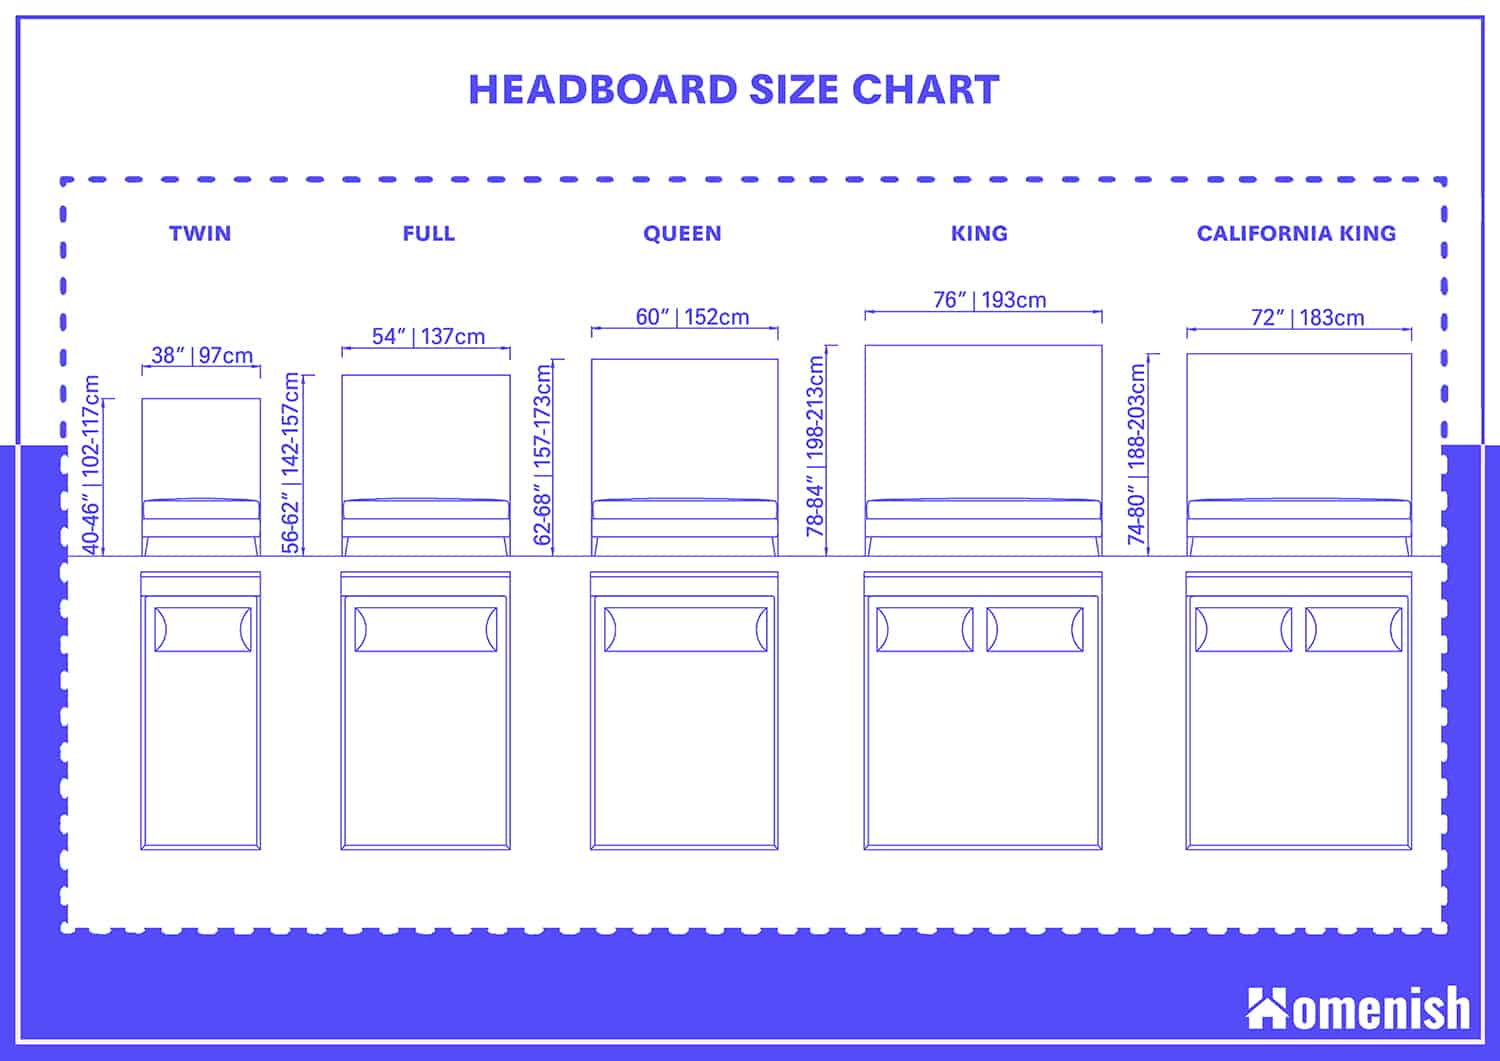 Standard Headboard Dimensions, How Long Is A King Size Headboard